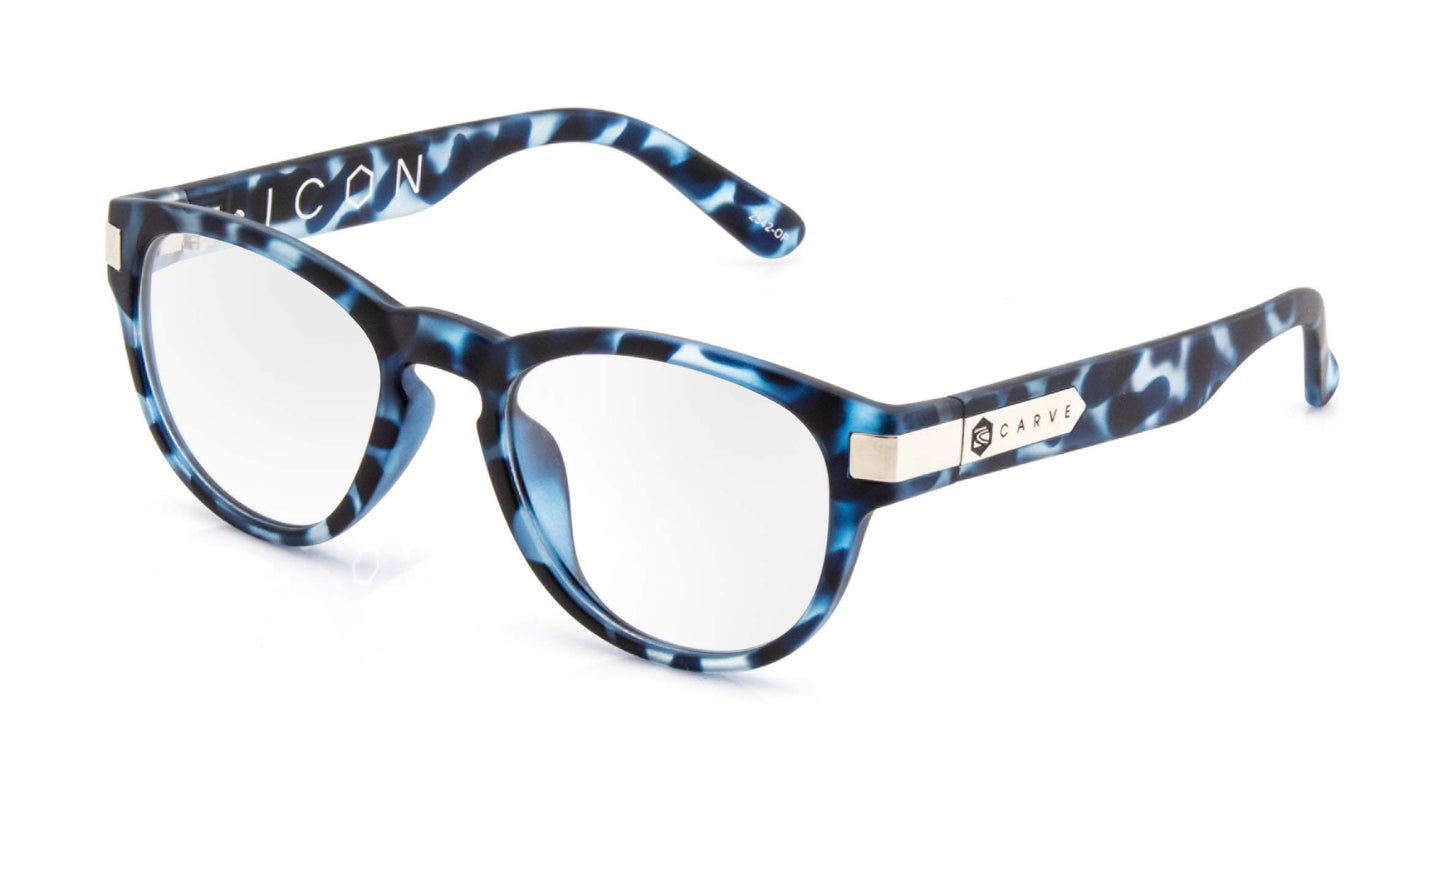 Icon - Reading Blue Tort Frame Glasses